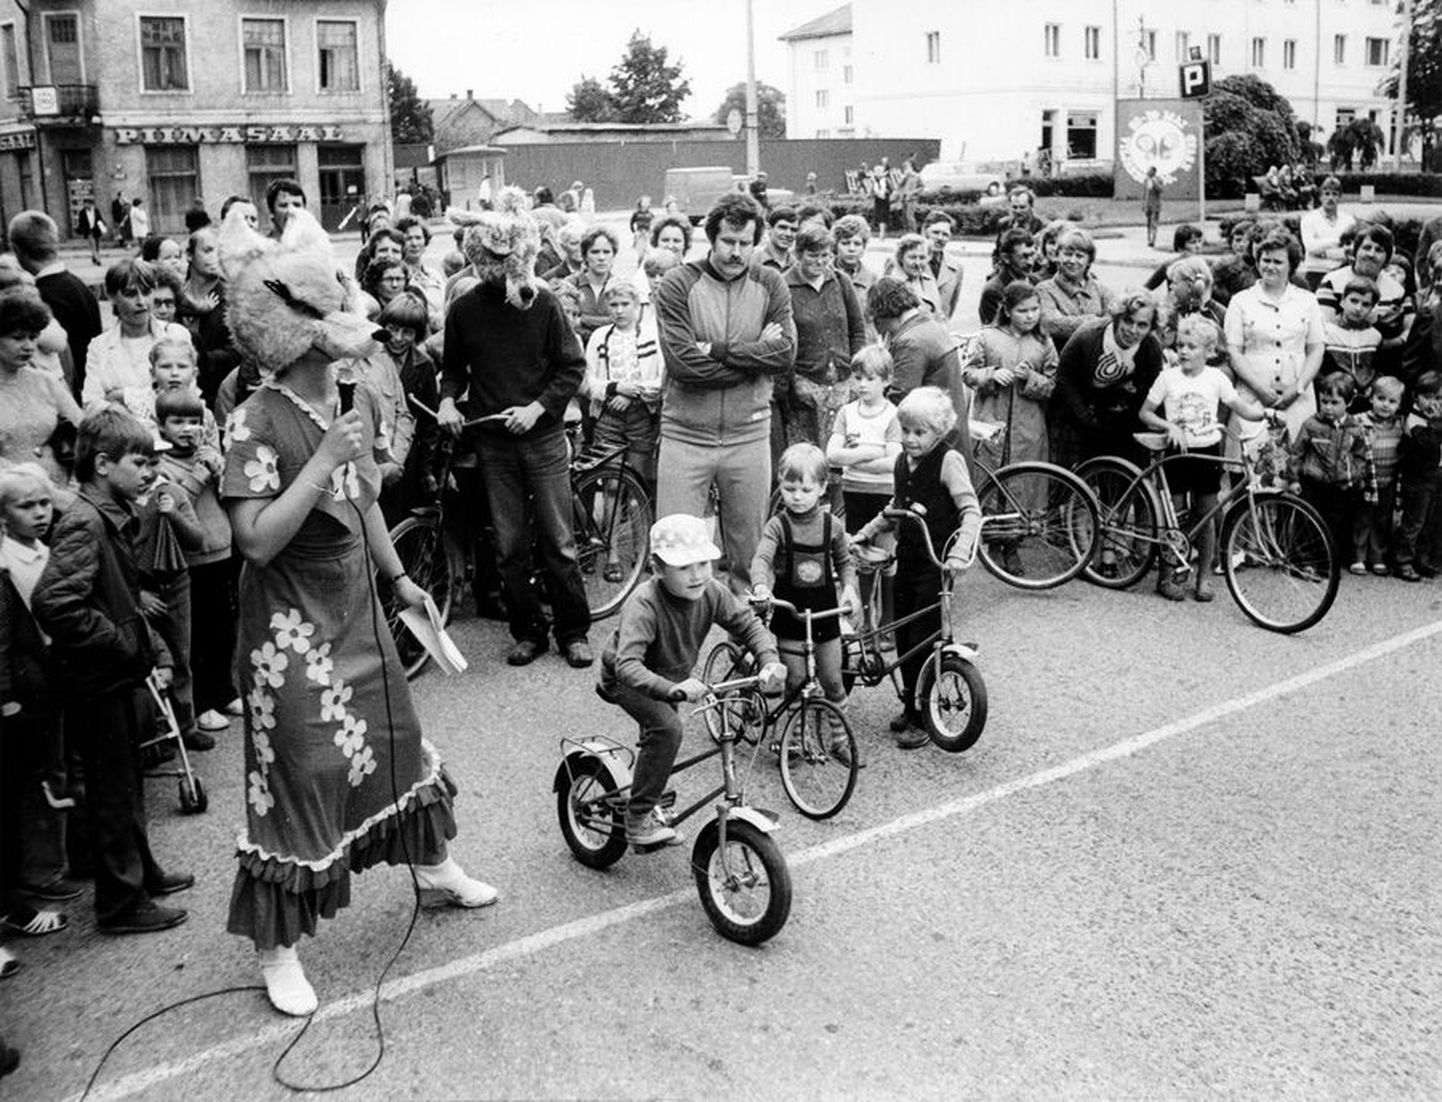 Aastal 1983 tähistati Viljandi linna 700. sünnipäeva ning linnas korraldati mitmesuguseid võistlusi, näitusi ja kontserte. Samal aastal elas Viljandis tõenäoliselt ka kõige rohkem inimesi läbi aegade.